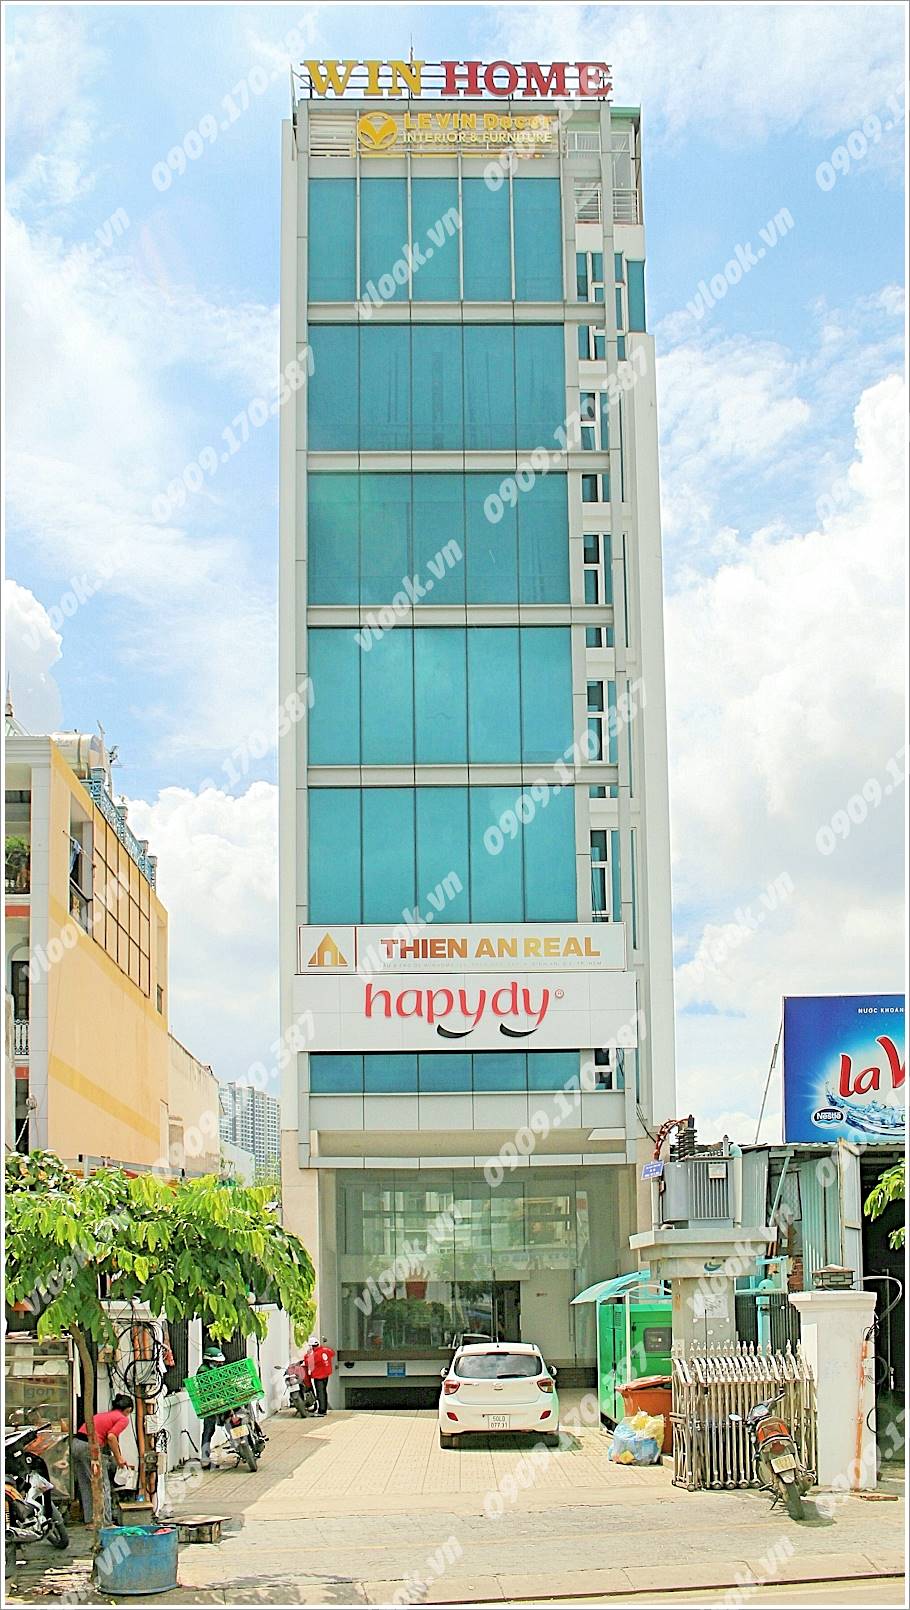 Cao ốc văn phòng cho thuê Win Home Building 150 Trần Não GHB Tower Quận 2, TP.hCM - vlook.vn